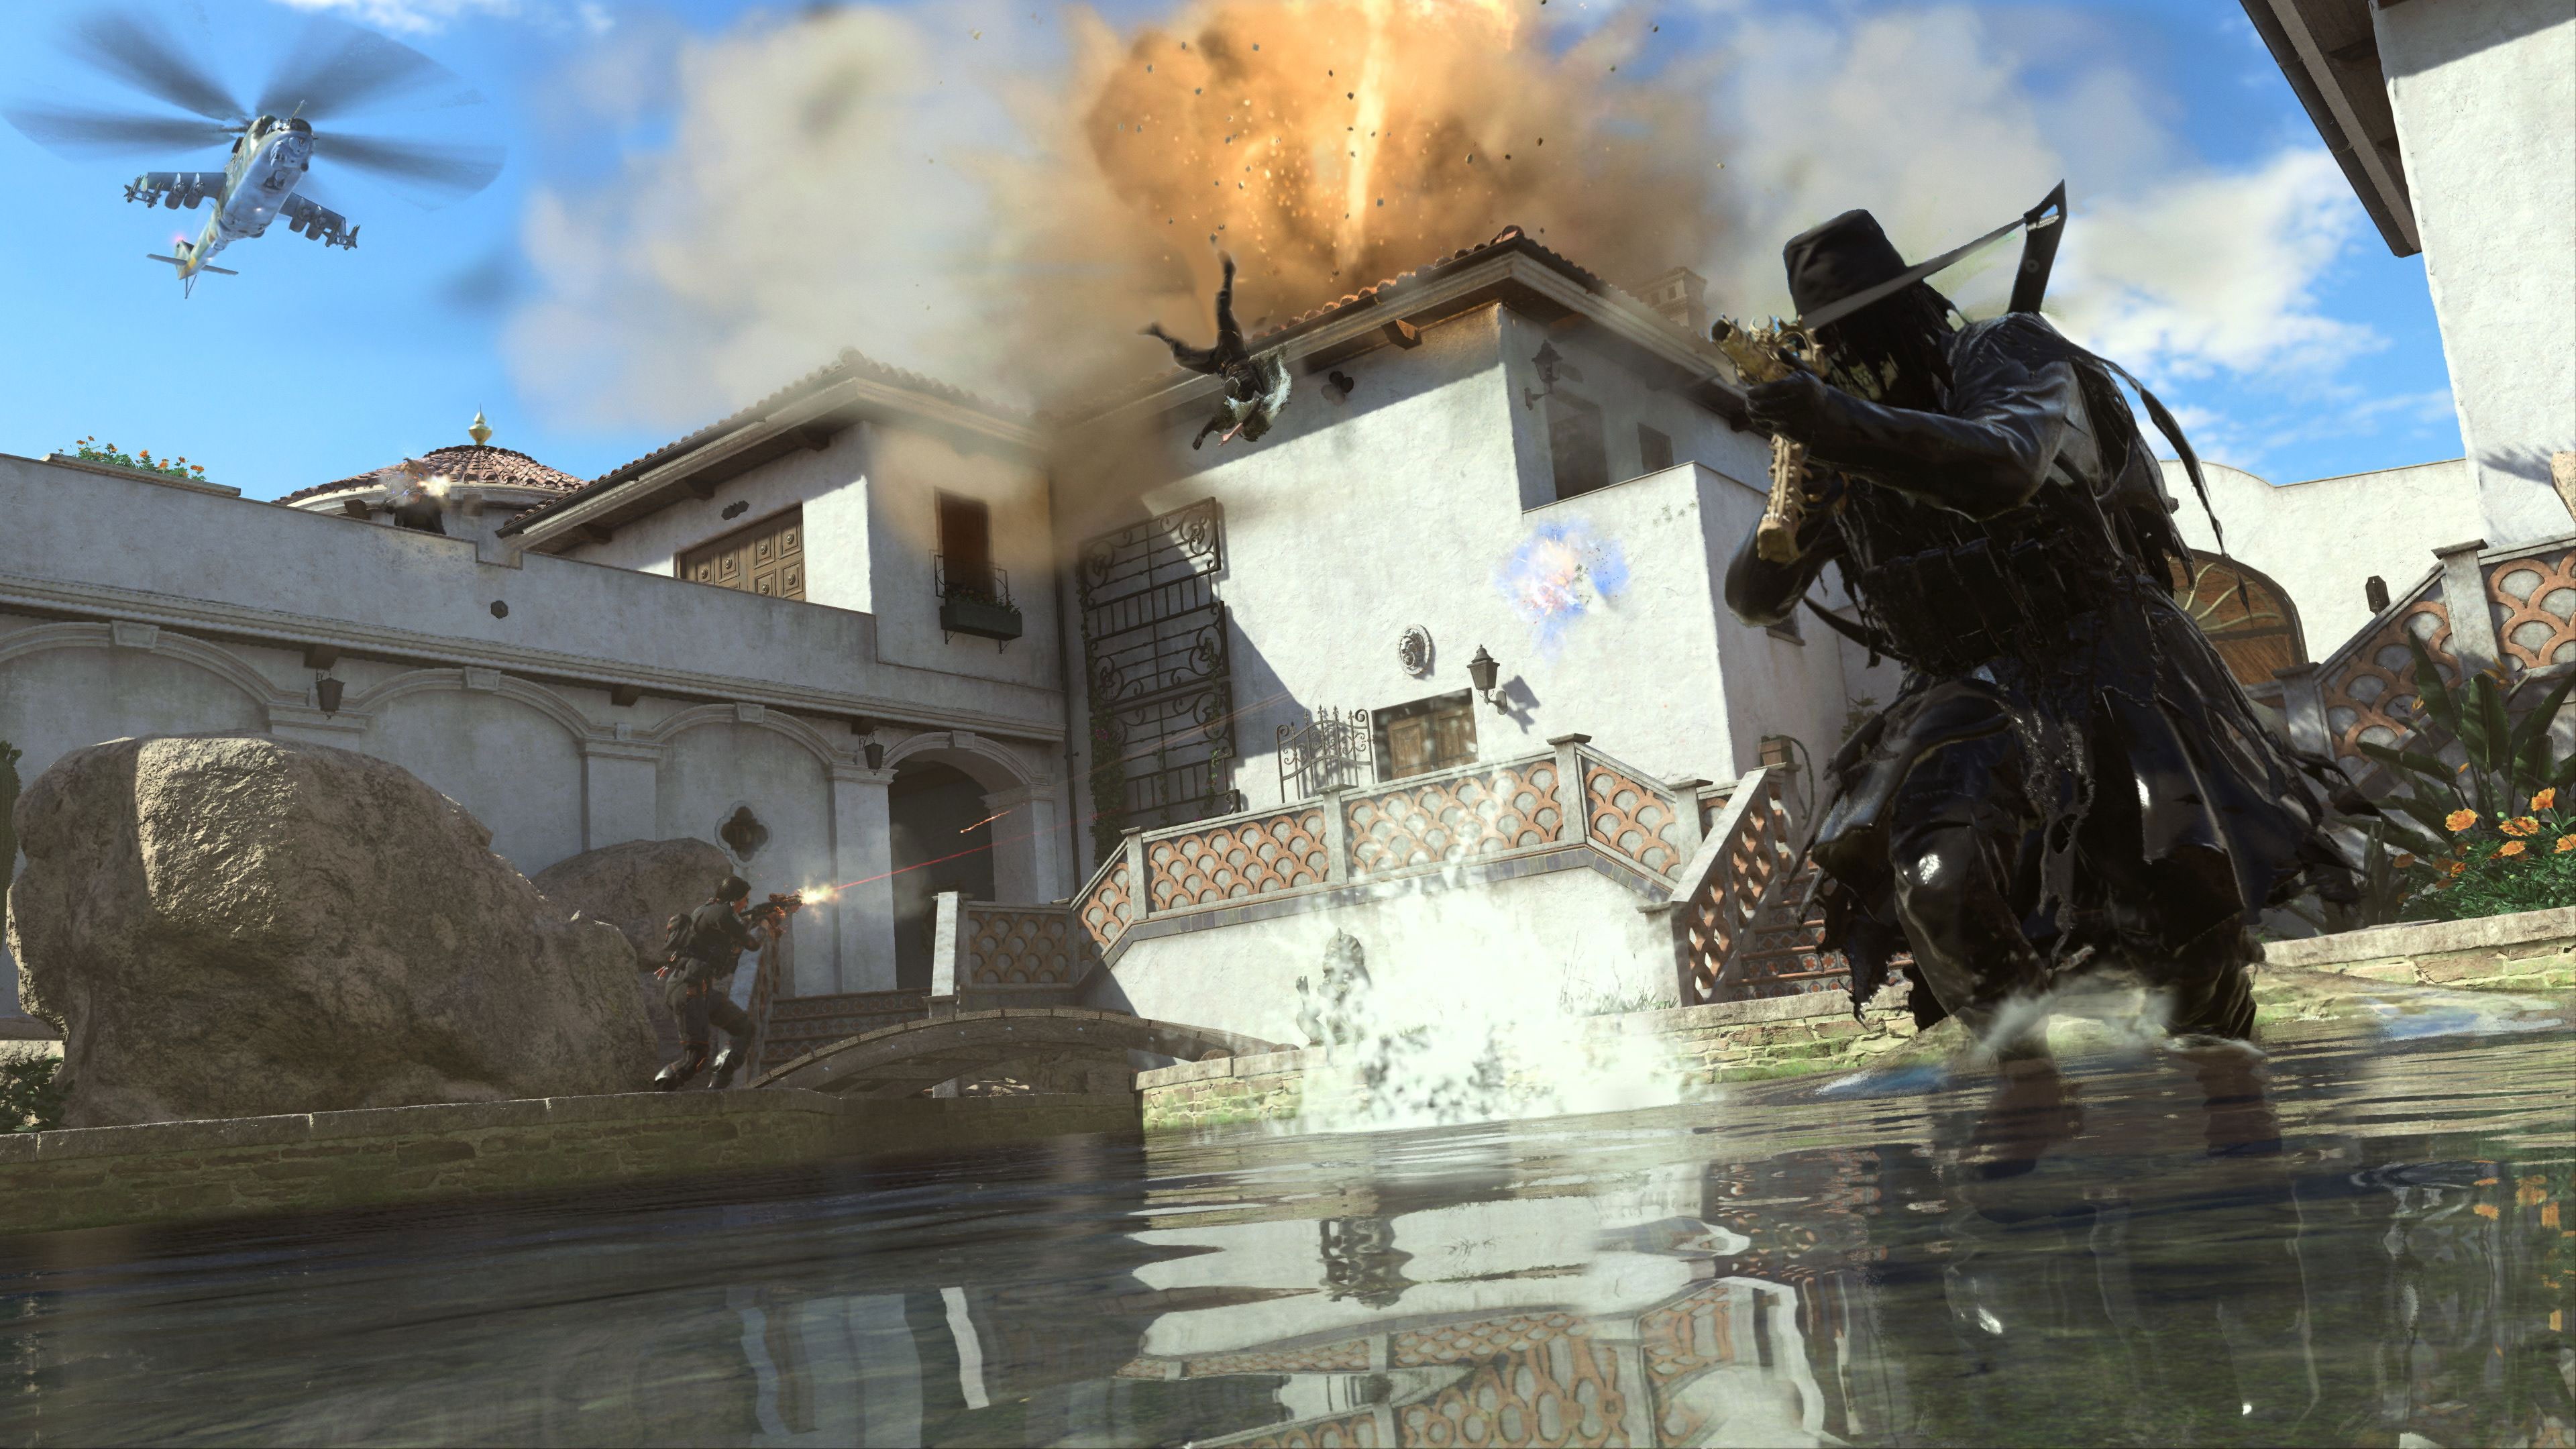 Call of Duty: Modern Warfare II - Cross-Gen Bundle - PS4, PS5